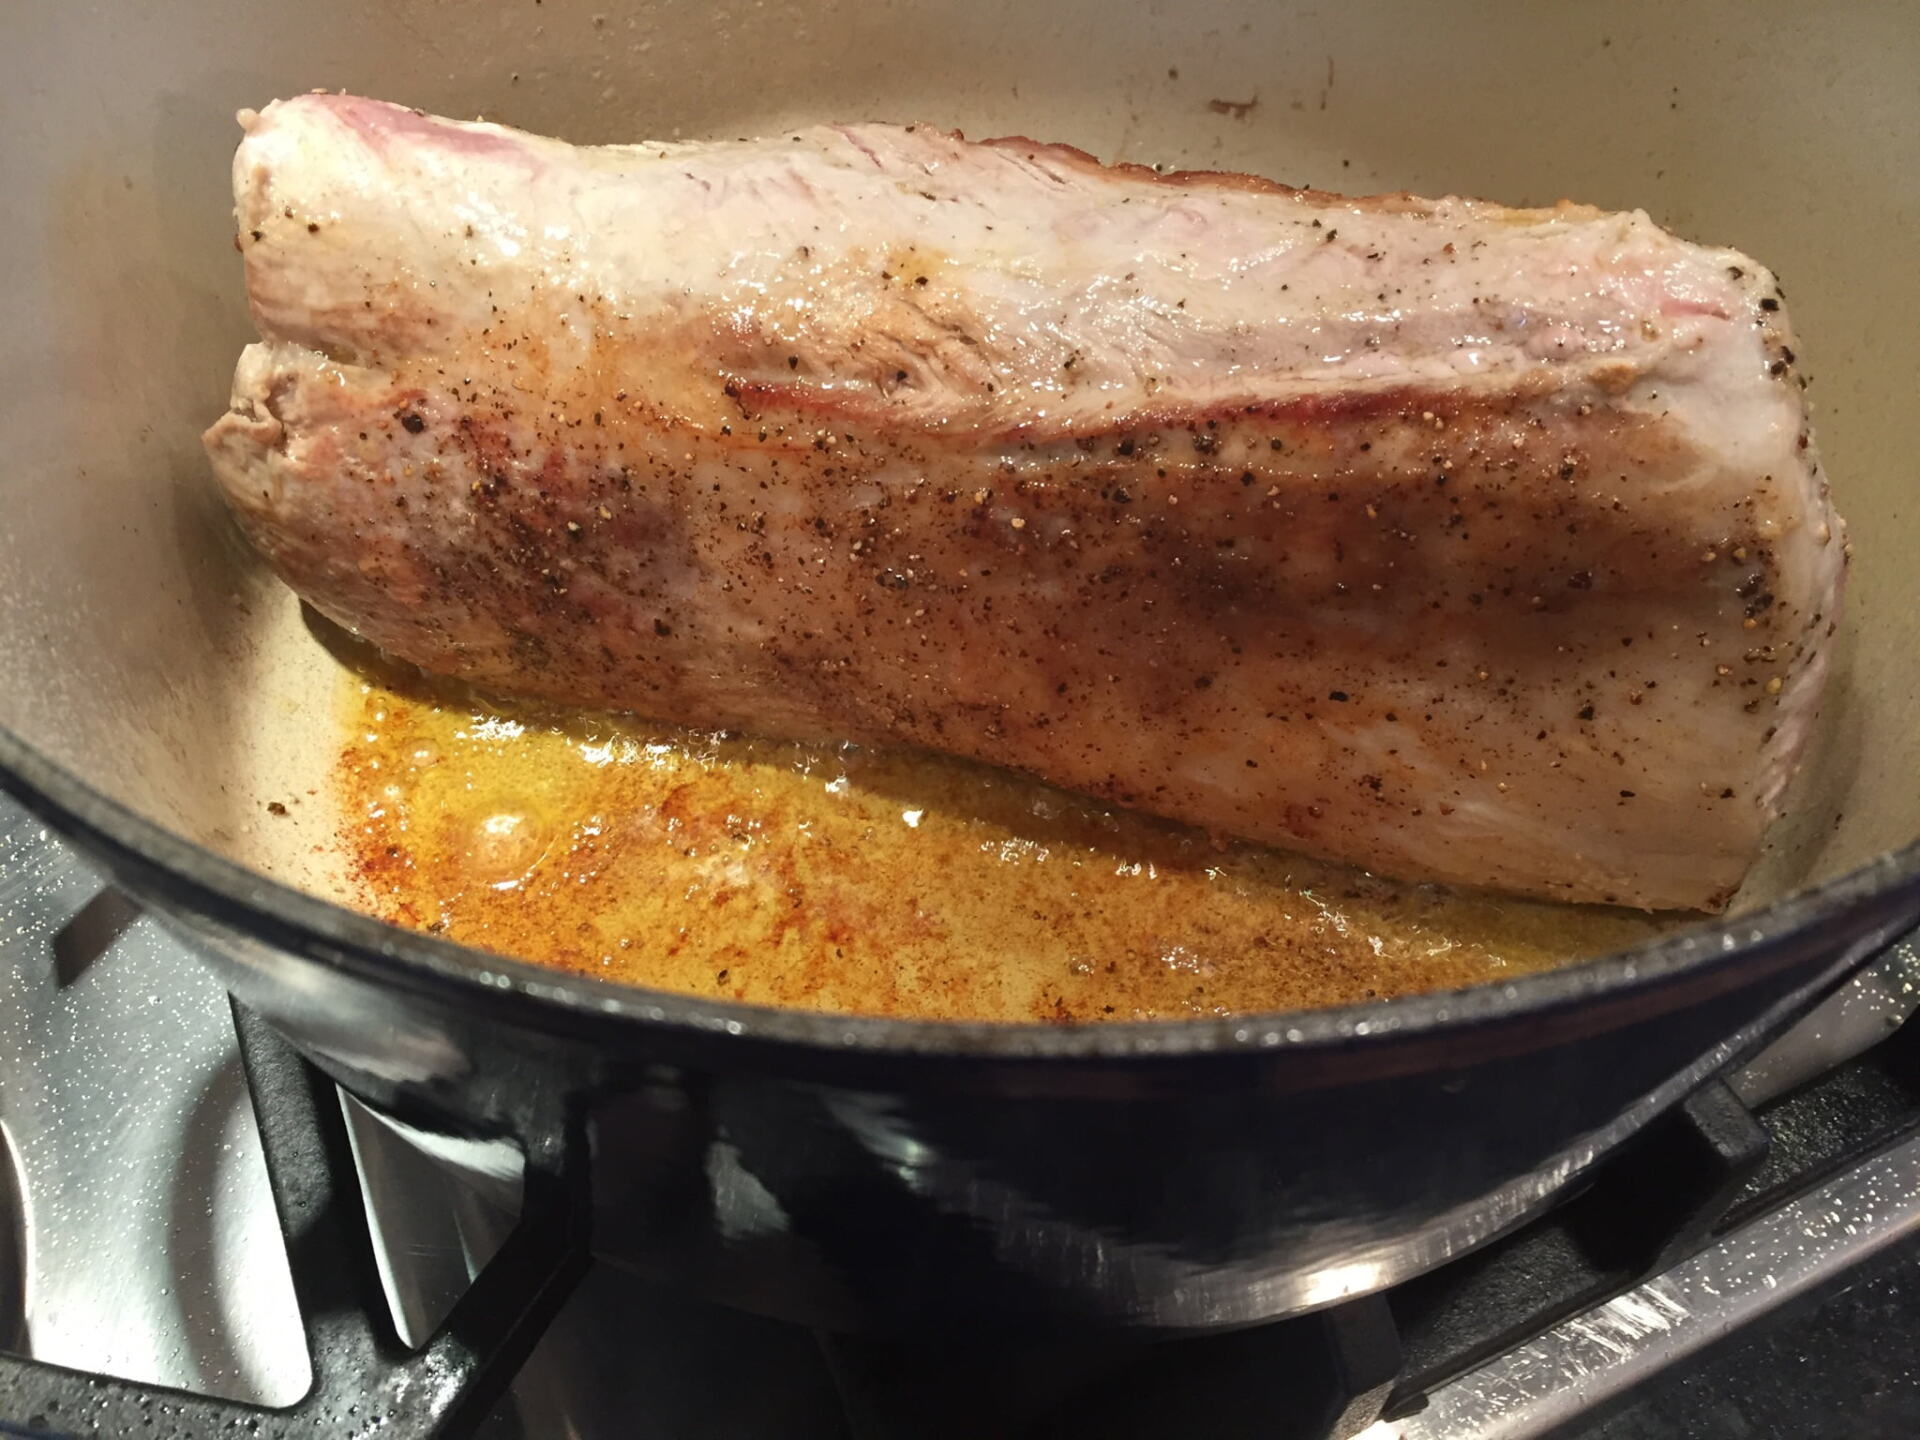 Pork roast browning in a pan